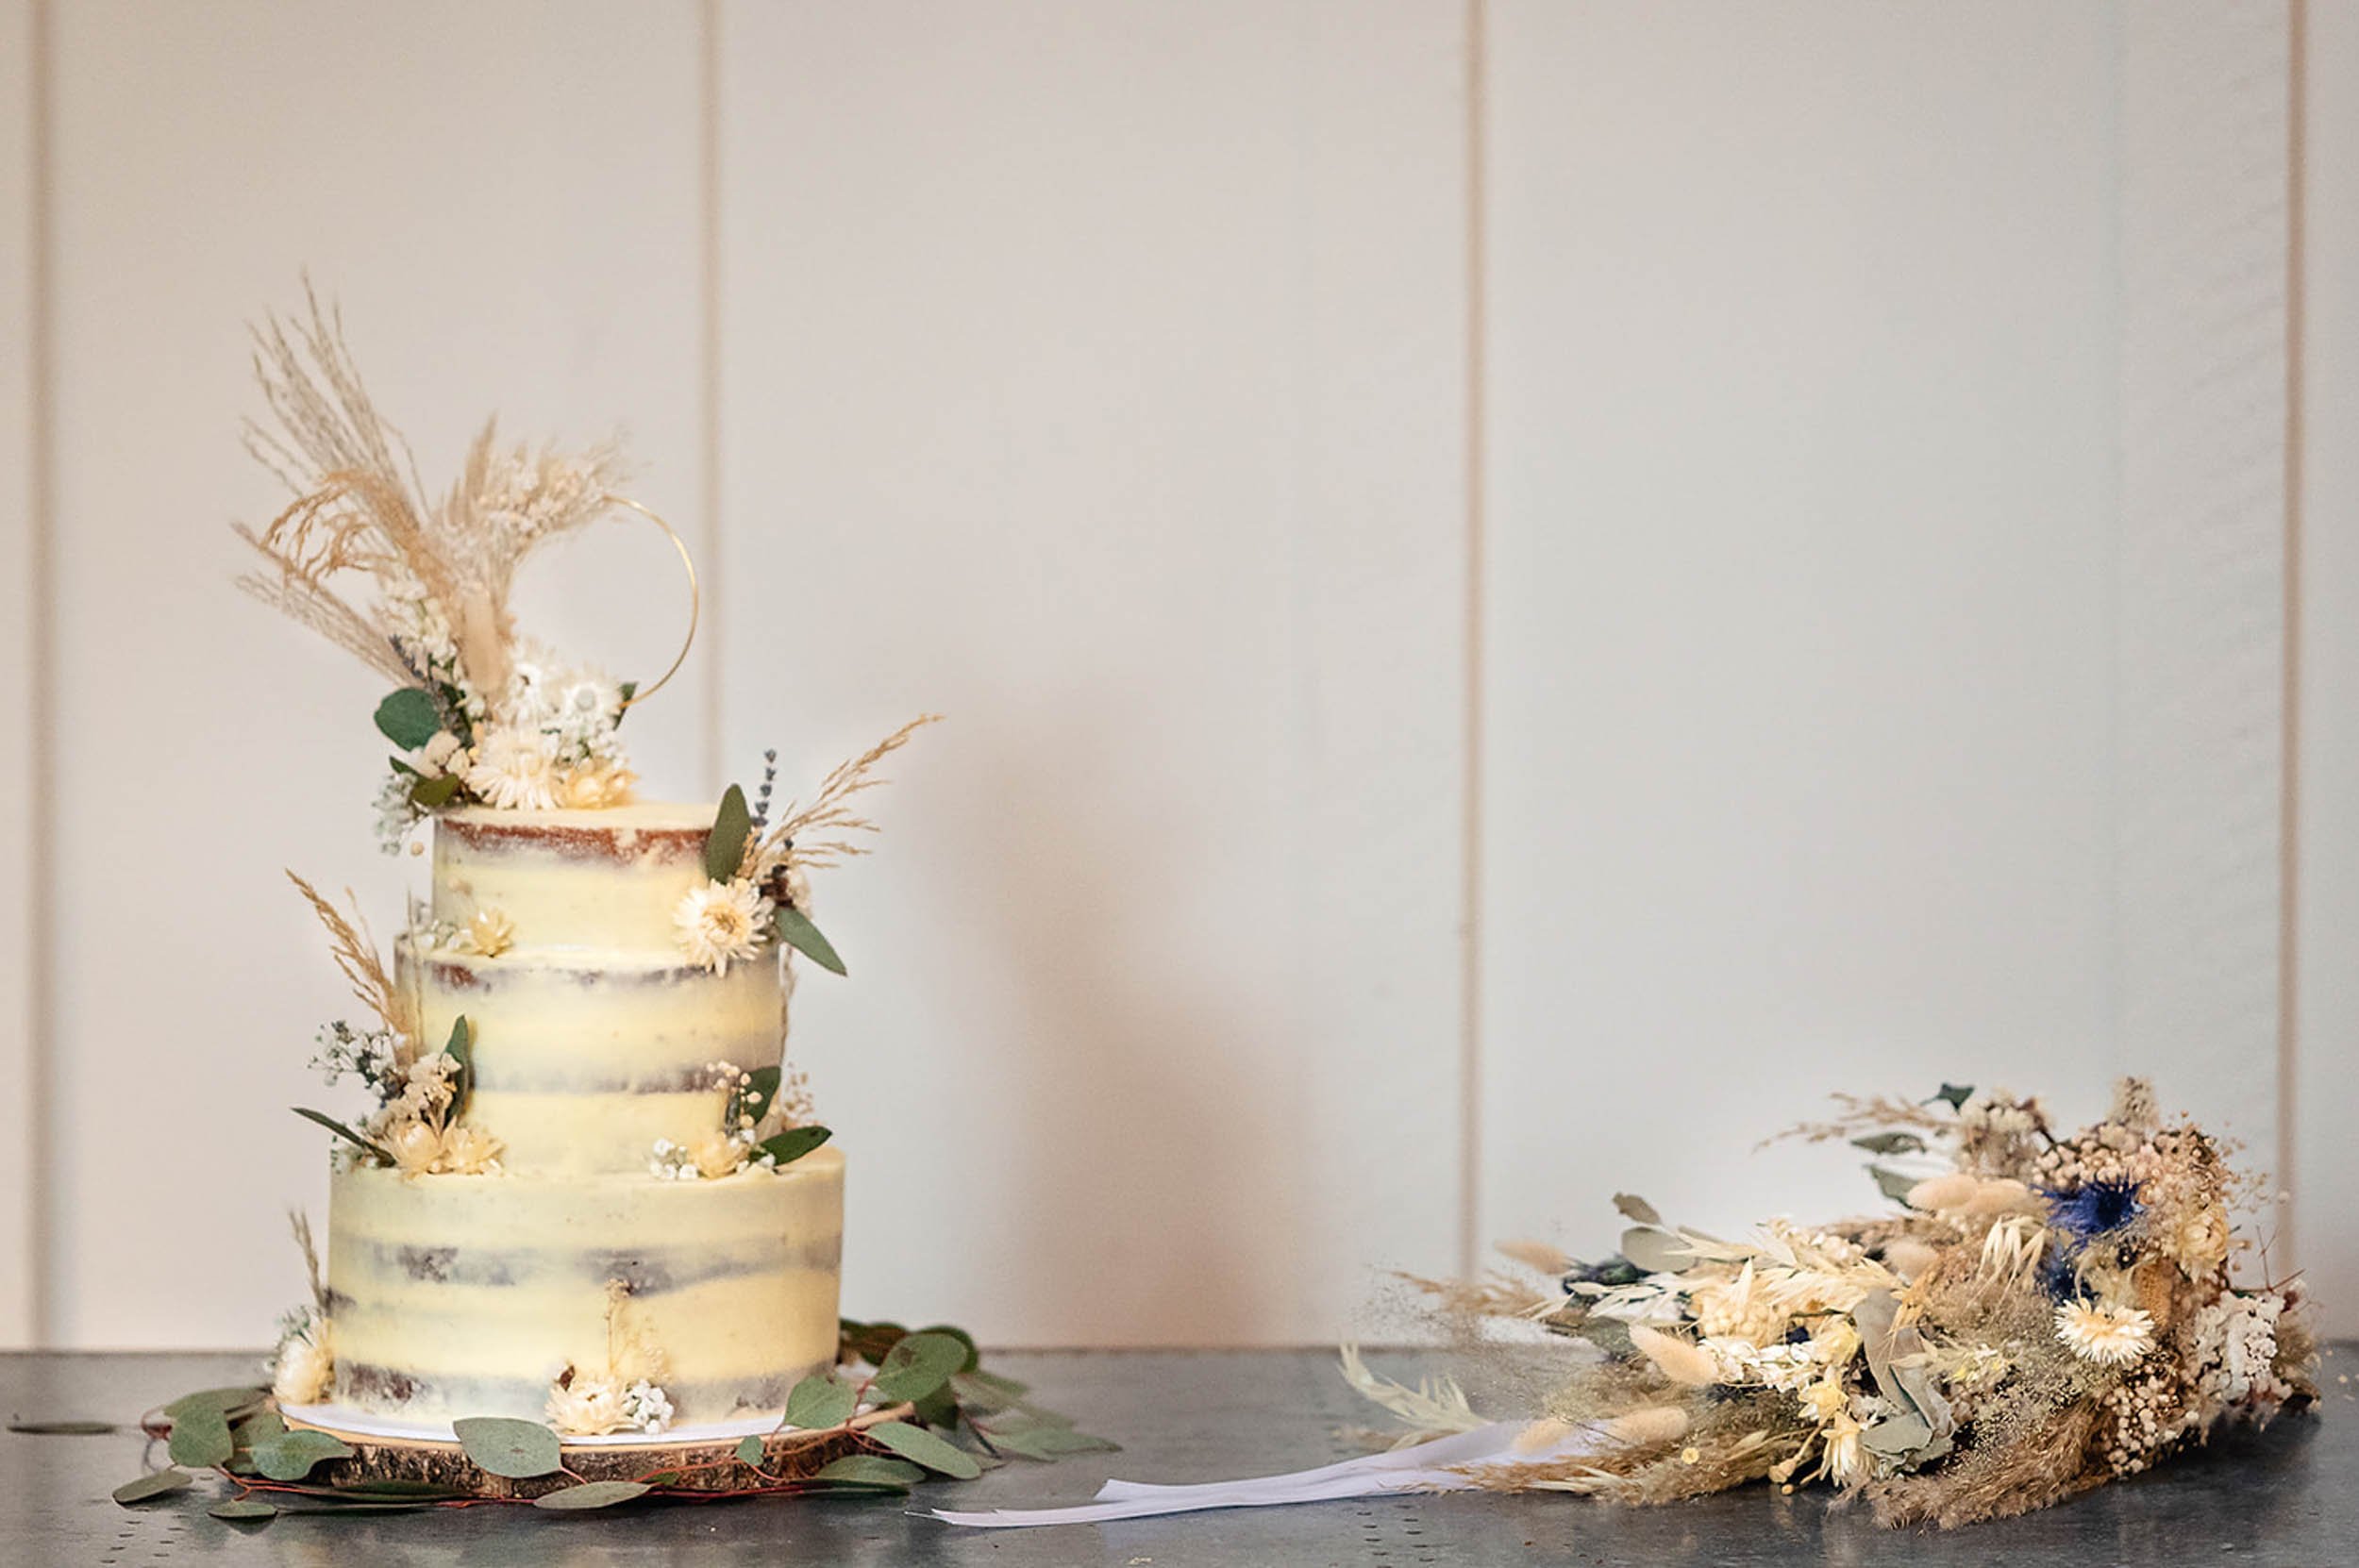 Millbridge Court wedding cake